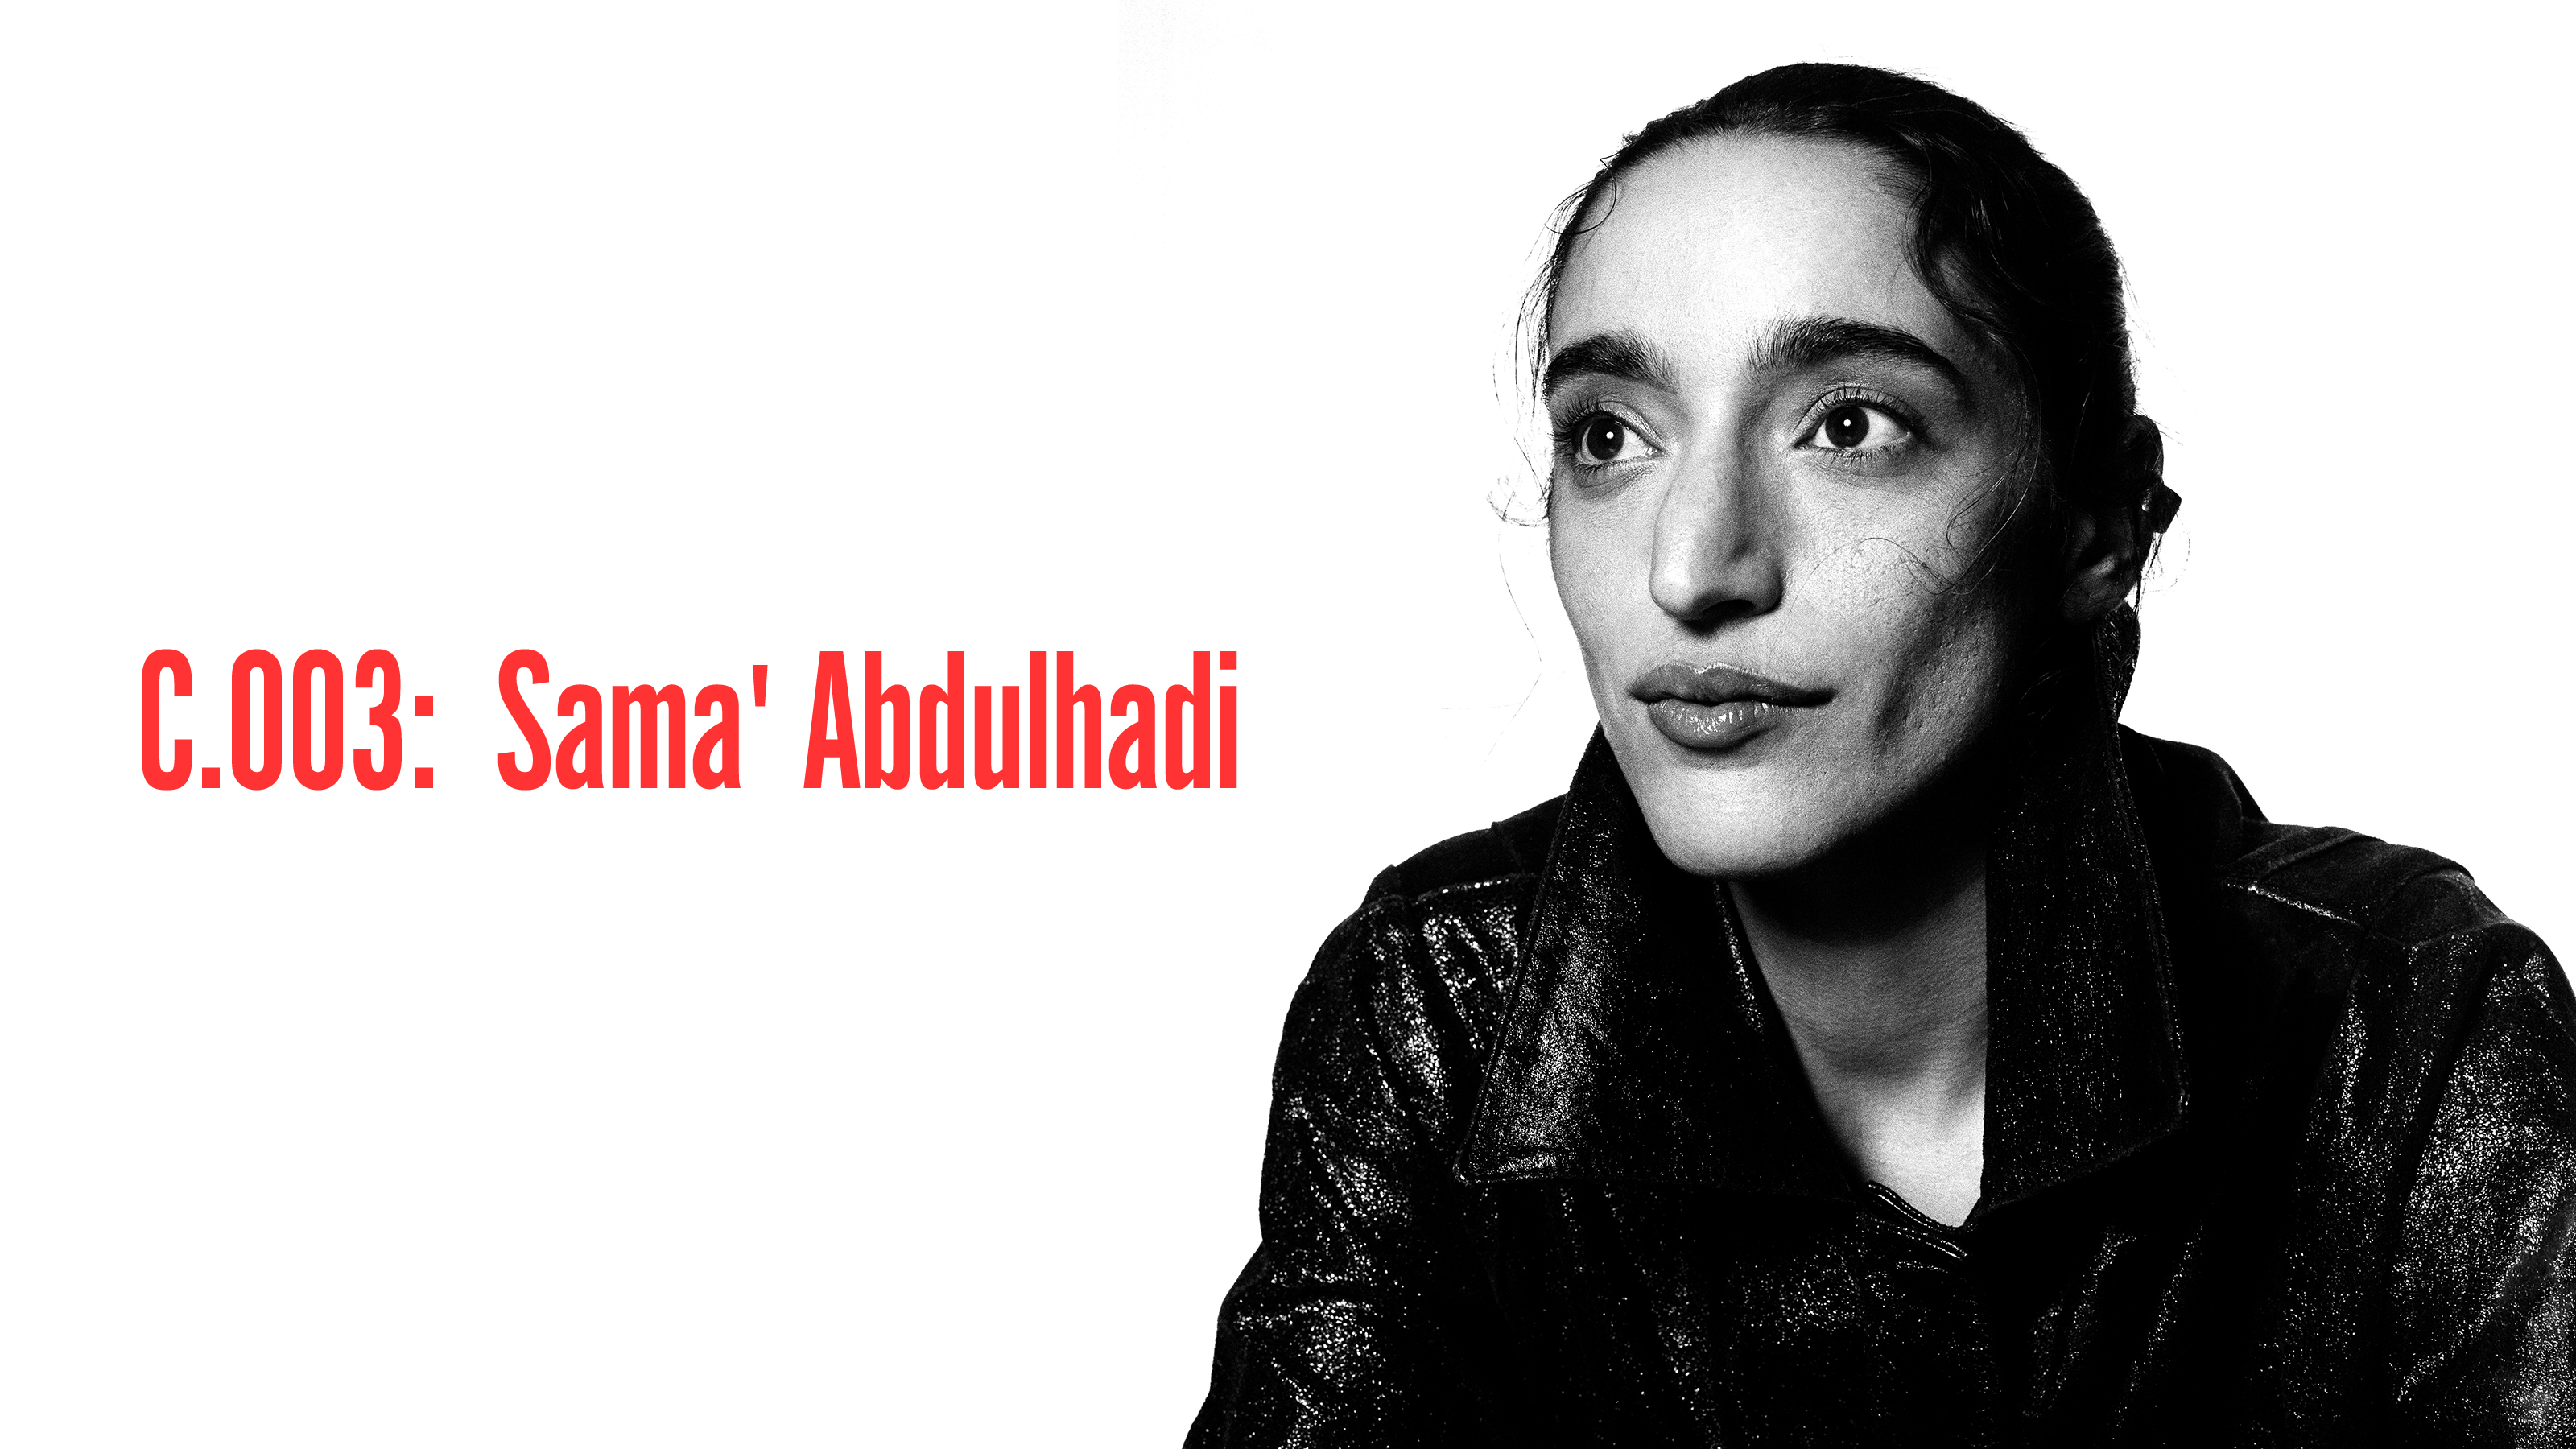 C.003: Sama' Abdulhadi: Beyond All Borders